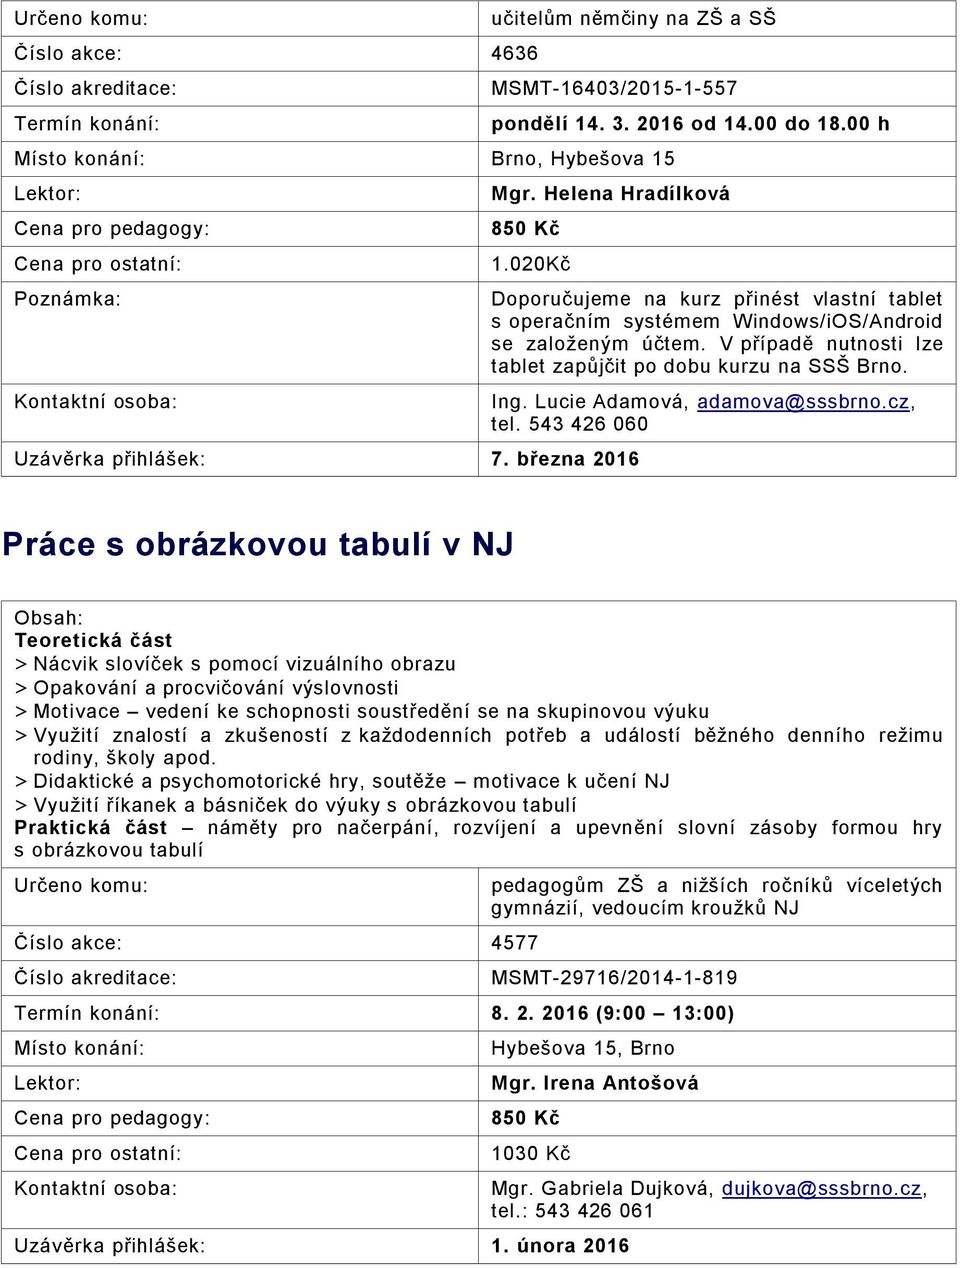 V případě nutnosti lze tablet zapůjčit po dobu kurzu na SSŠ Brno. Ing. Lucie Adamová, adamova@sssbrno.cz, tel.